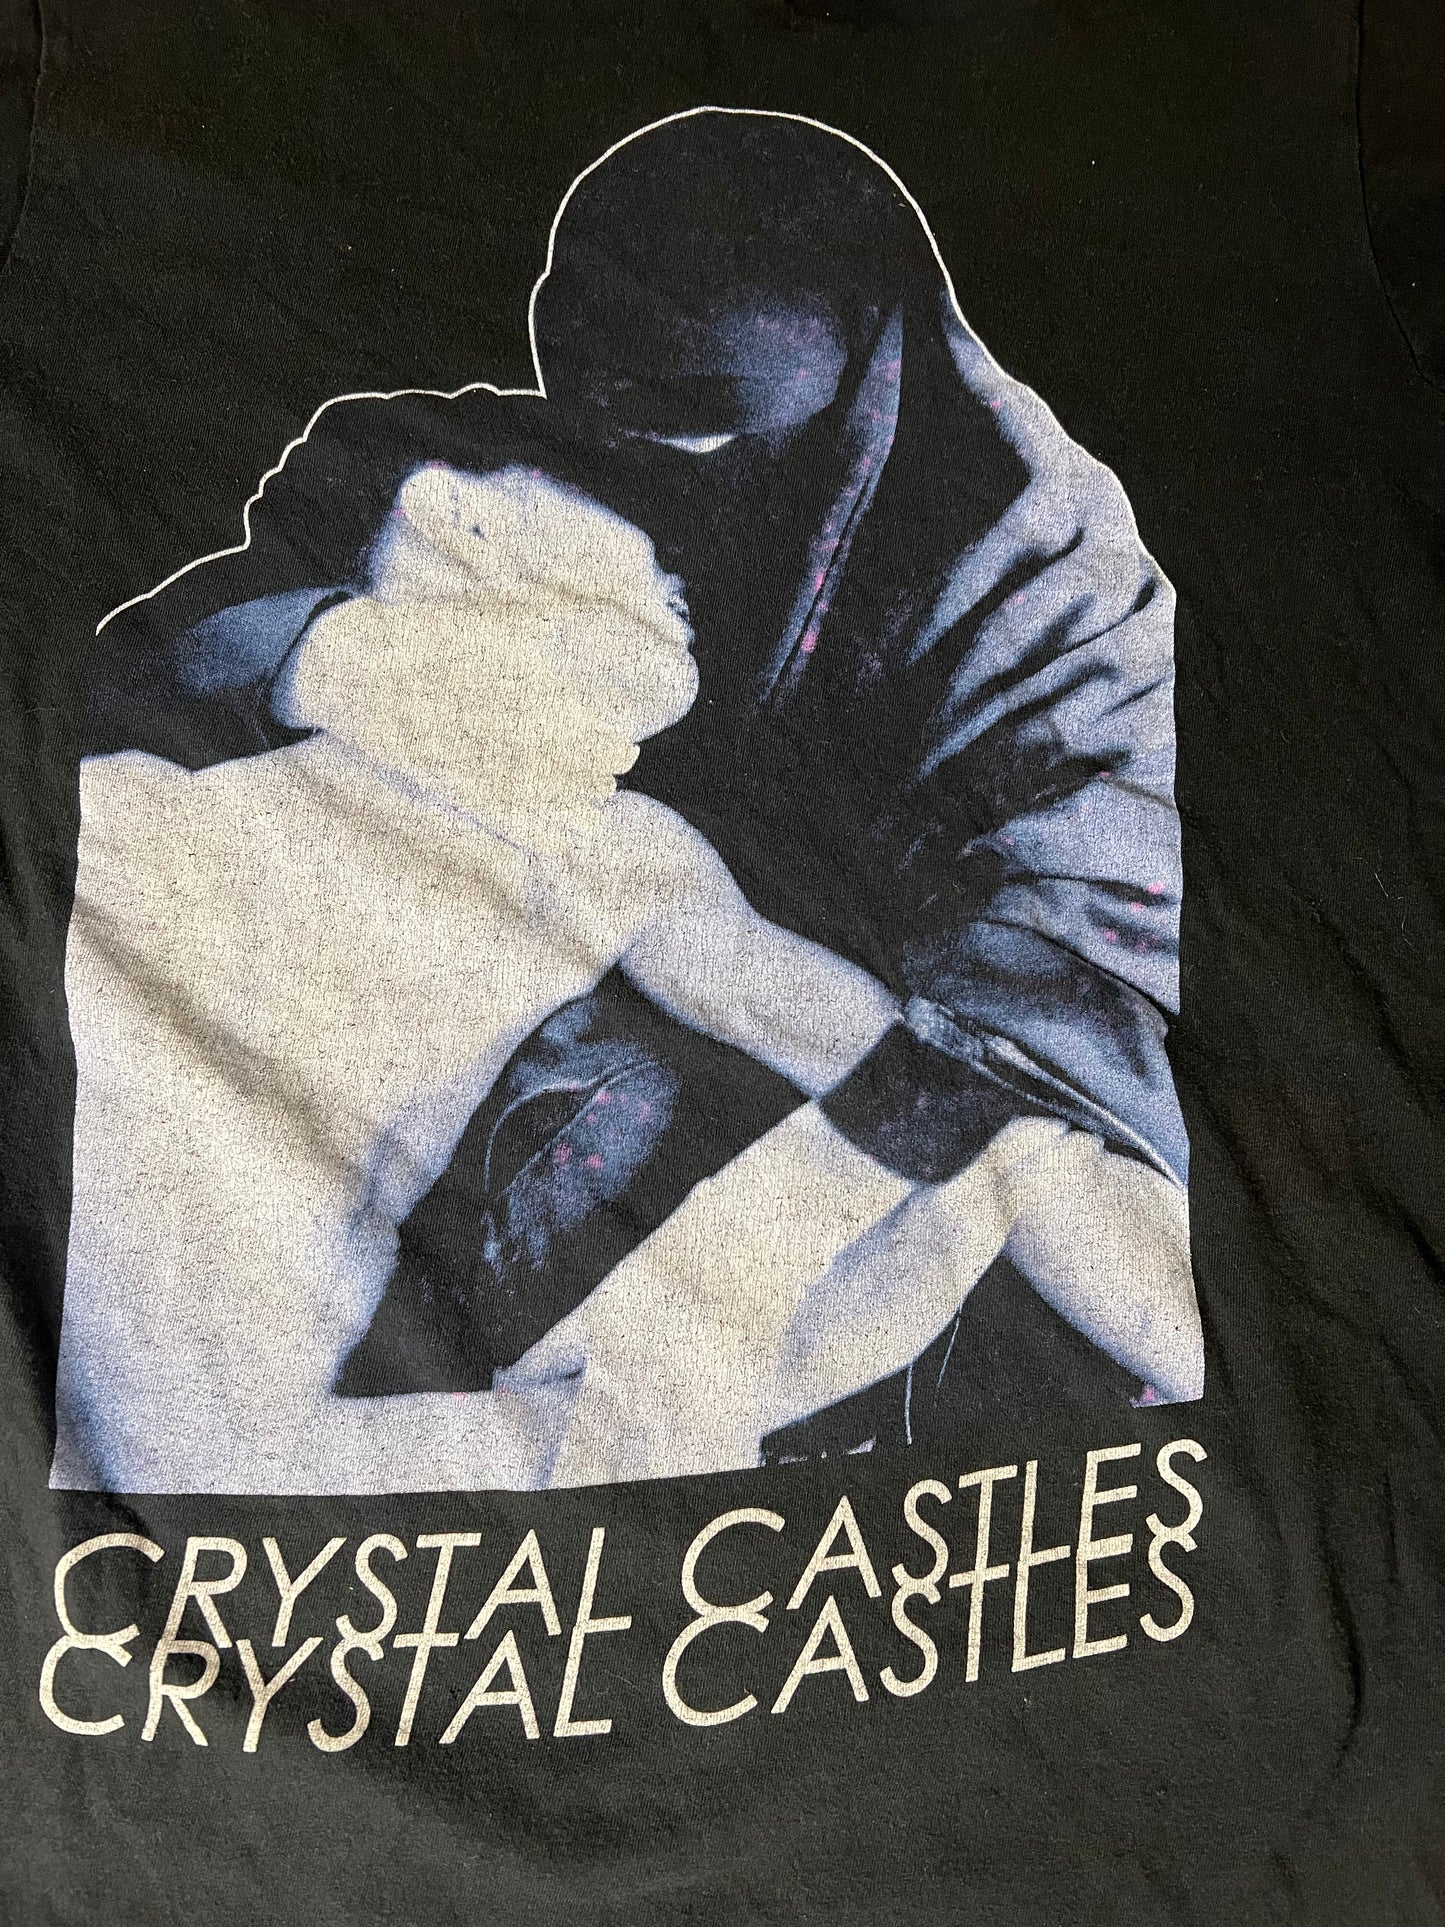 2012 Crystal Castles (iii) T Shirt